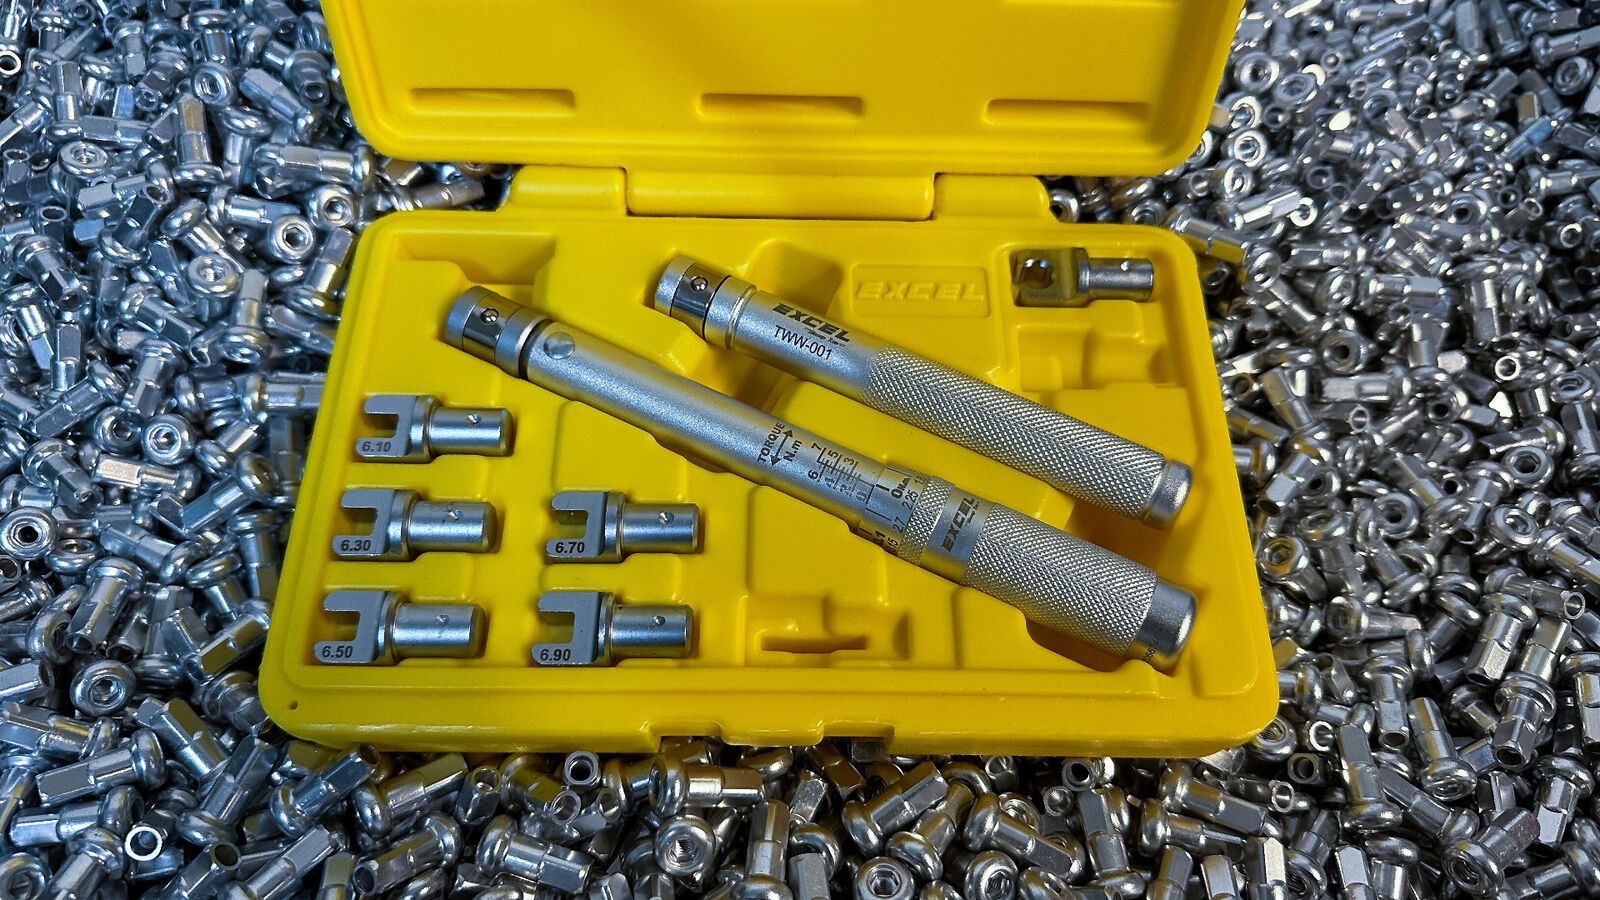 Excel Spoke Torque Wrench Set - Spline Interchangeable Heads